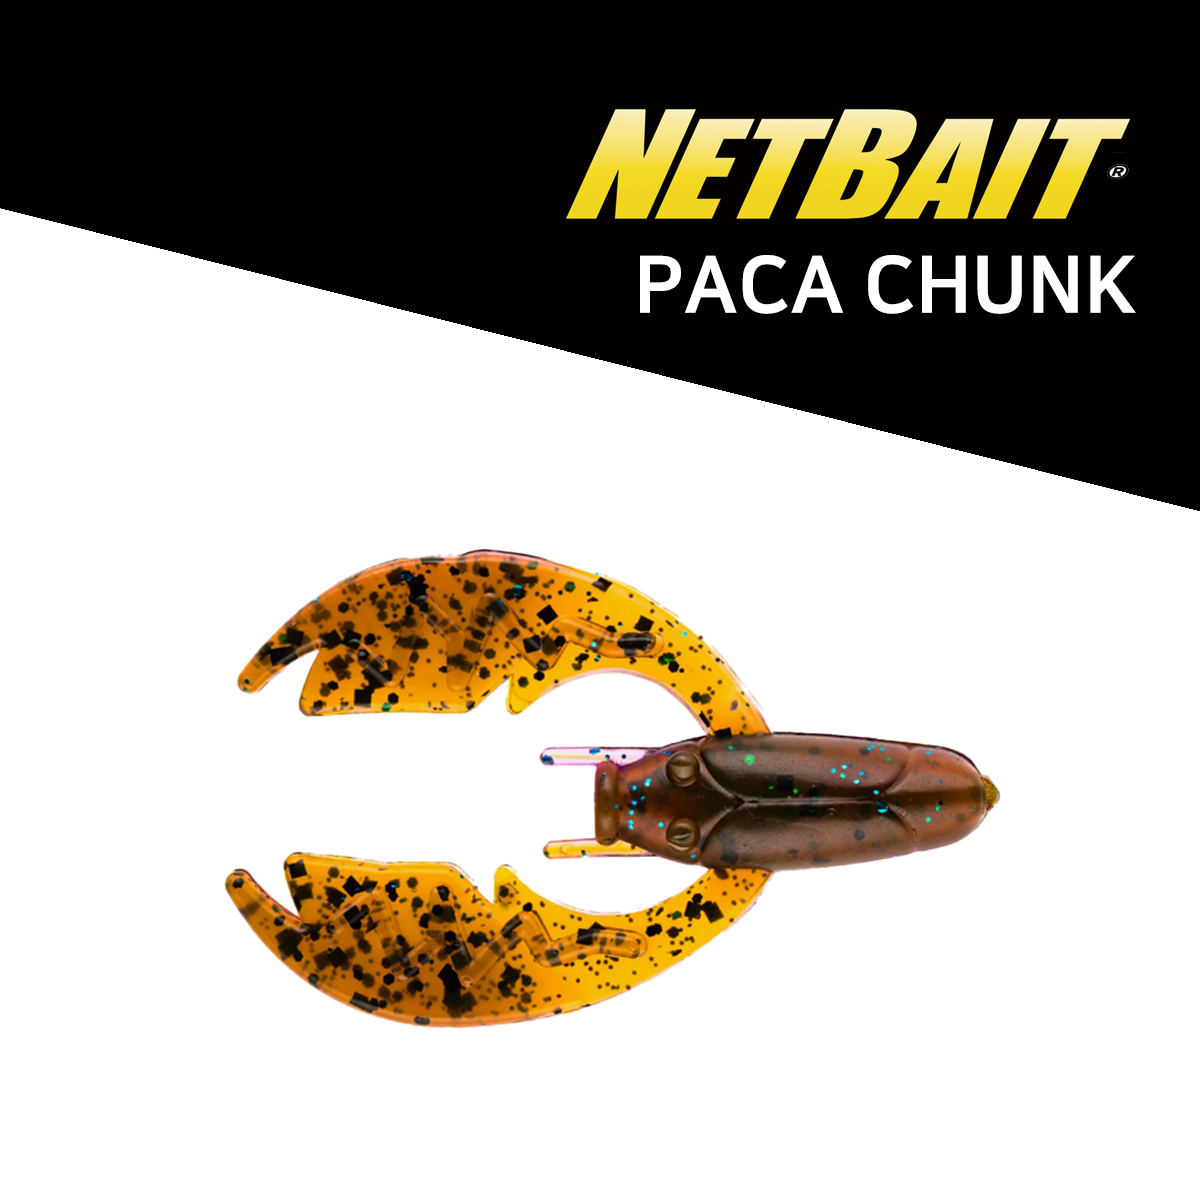 NETBAIT PACA CHUNK